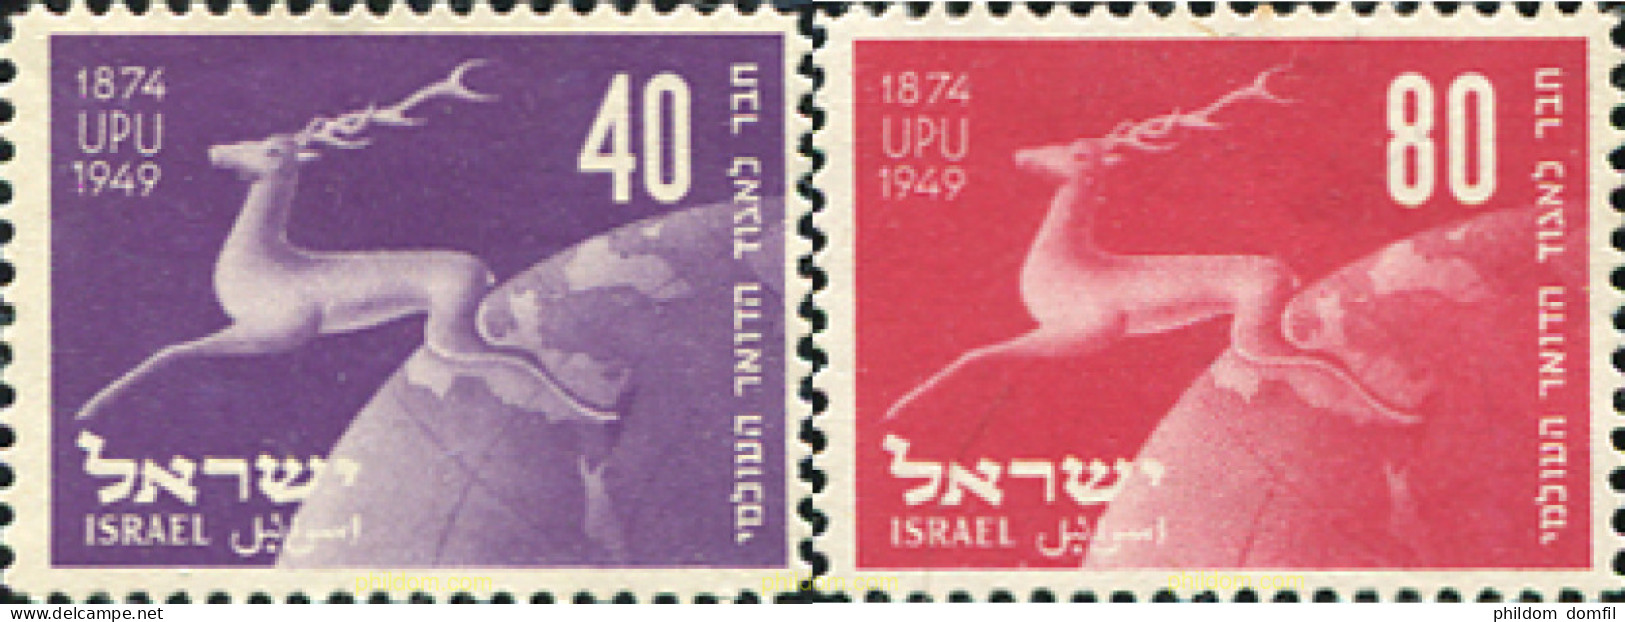 79291 MNH ISRAEL 1950 75 ANIVERSARIO DE LA UPU - Nuovi (senza Tab)